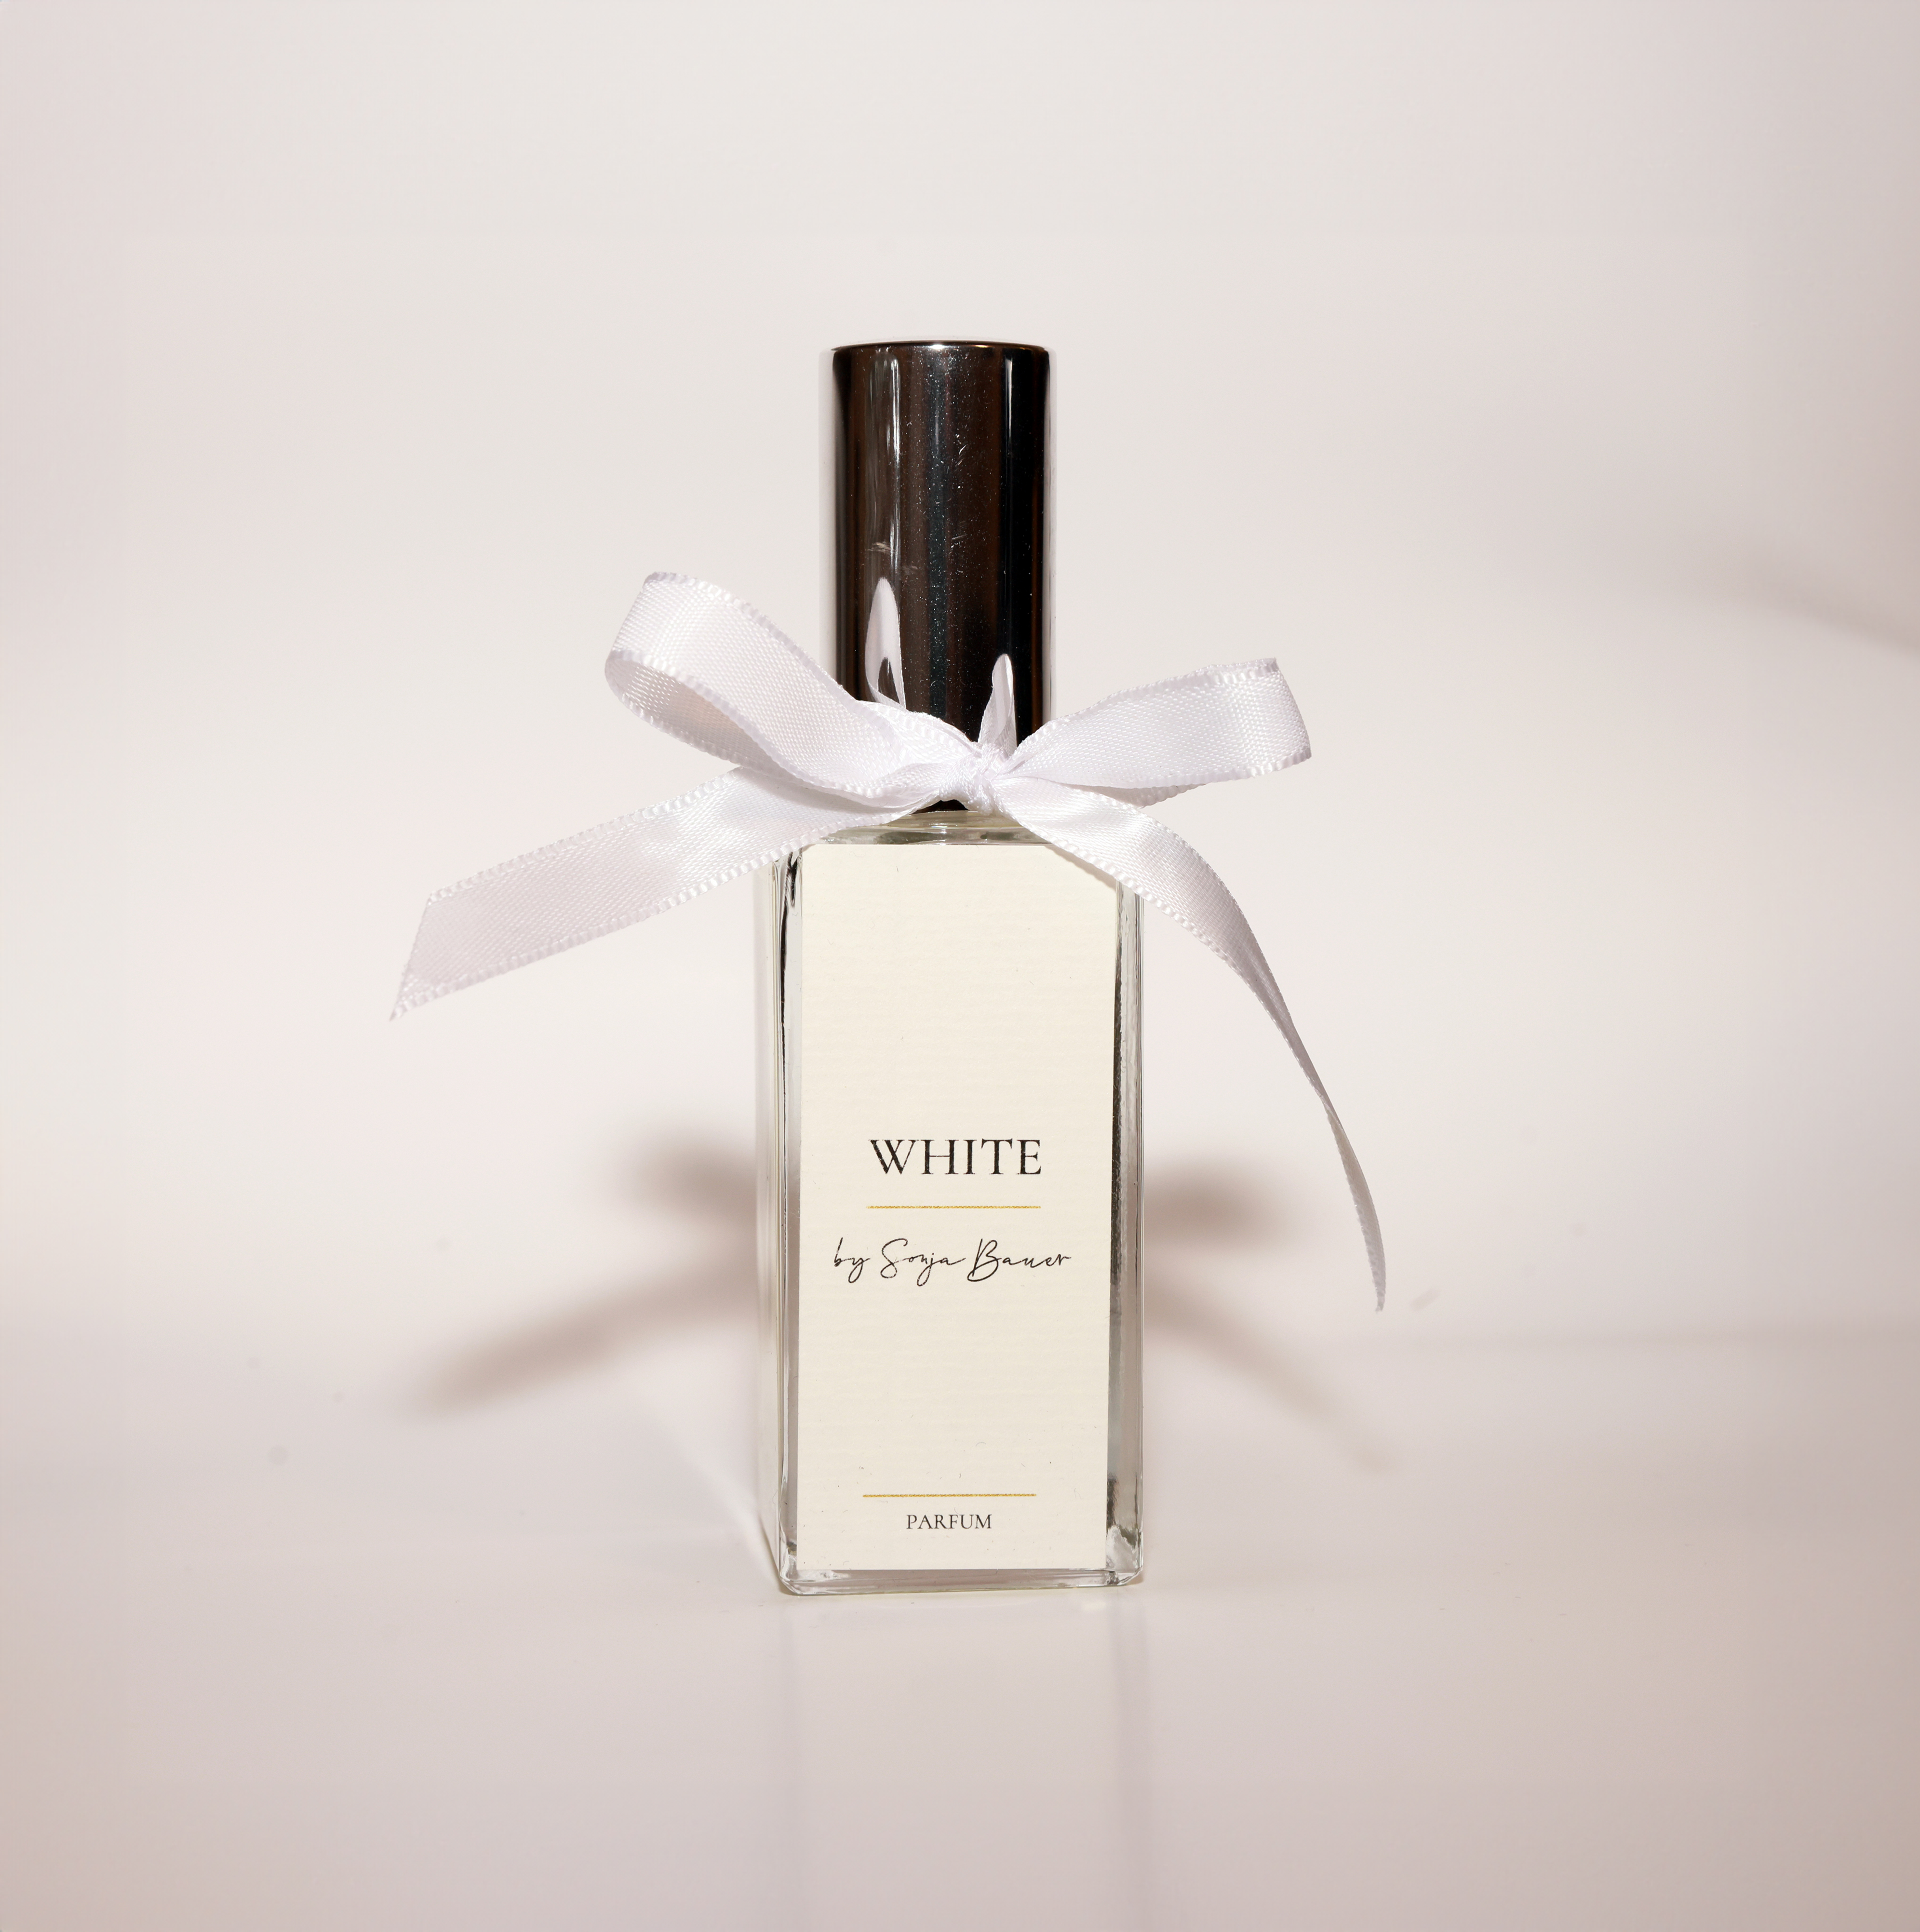 Parfüm WHITE by Sonja Bauer